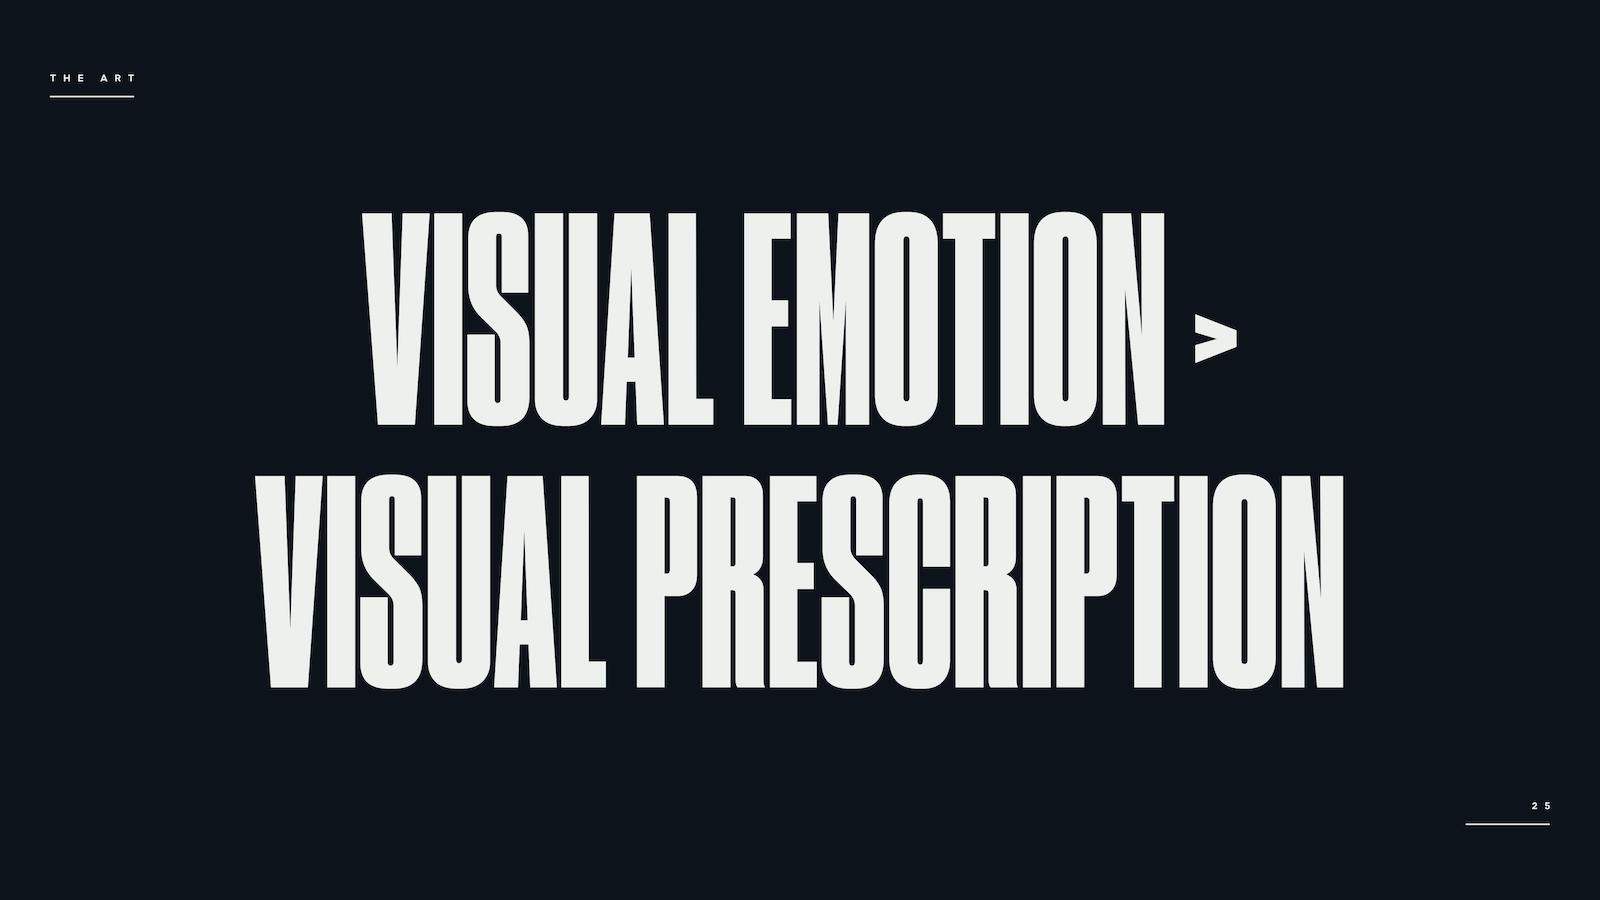 VISUAL EMOTION > VISUAL PRESCRIPTION